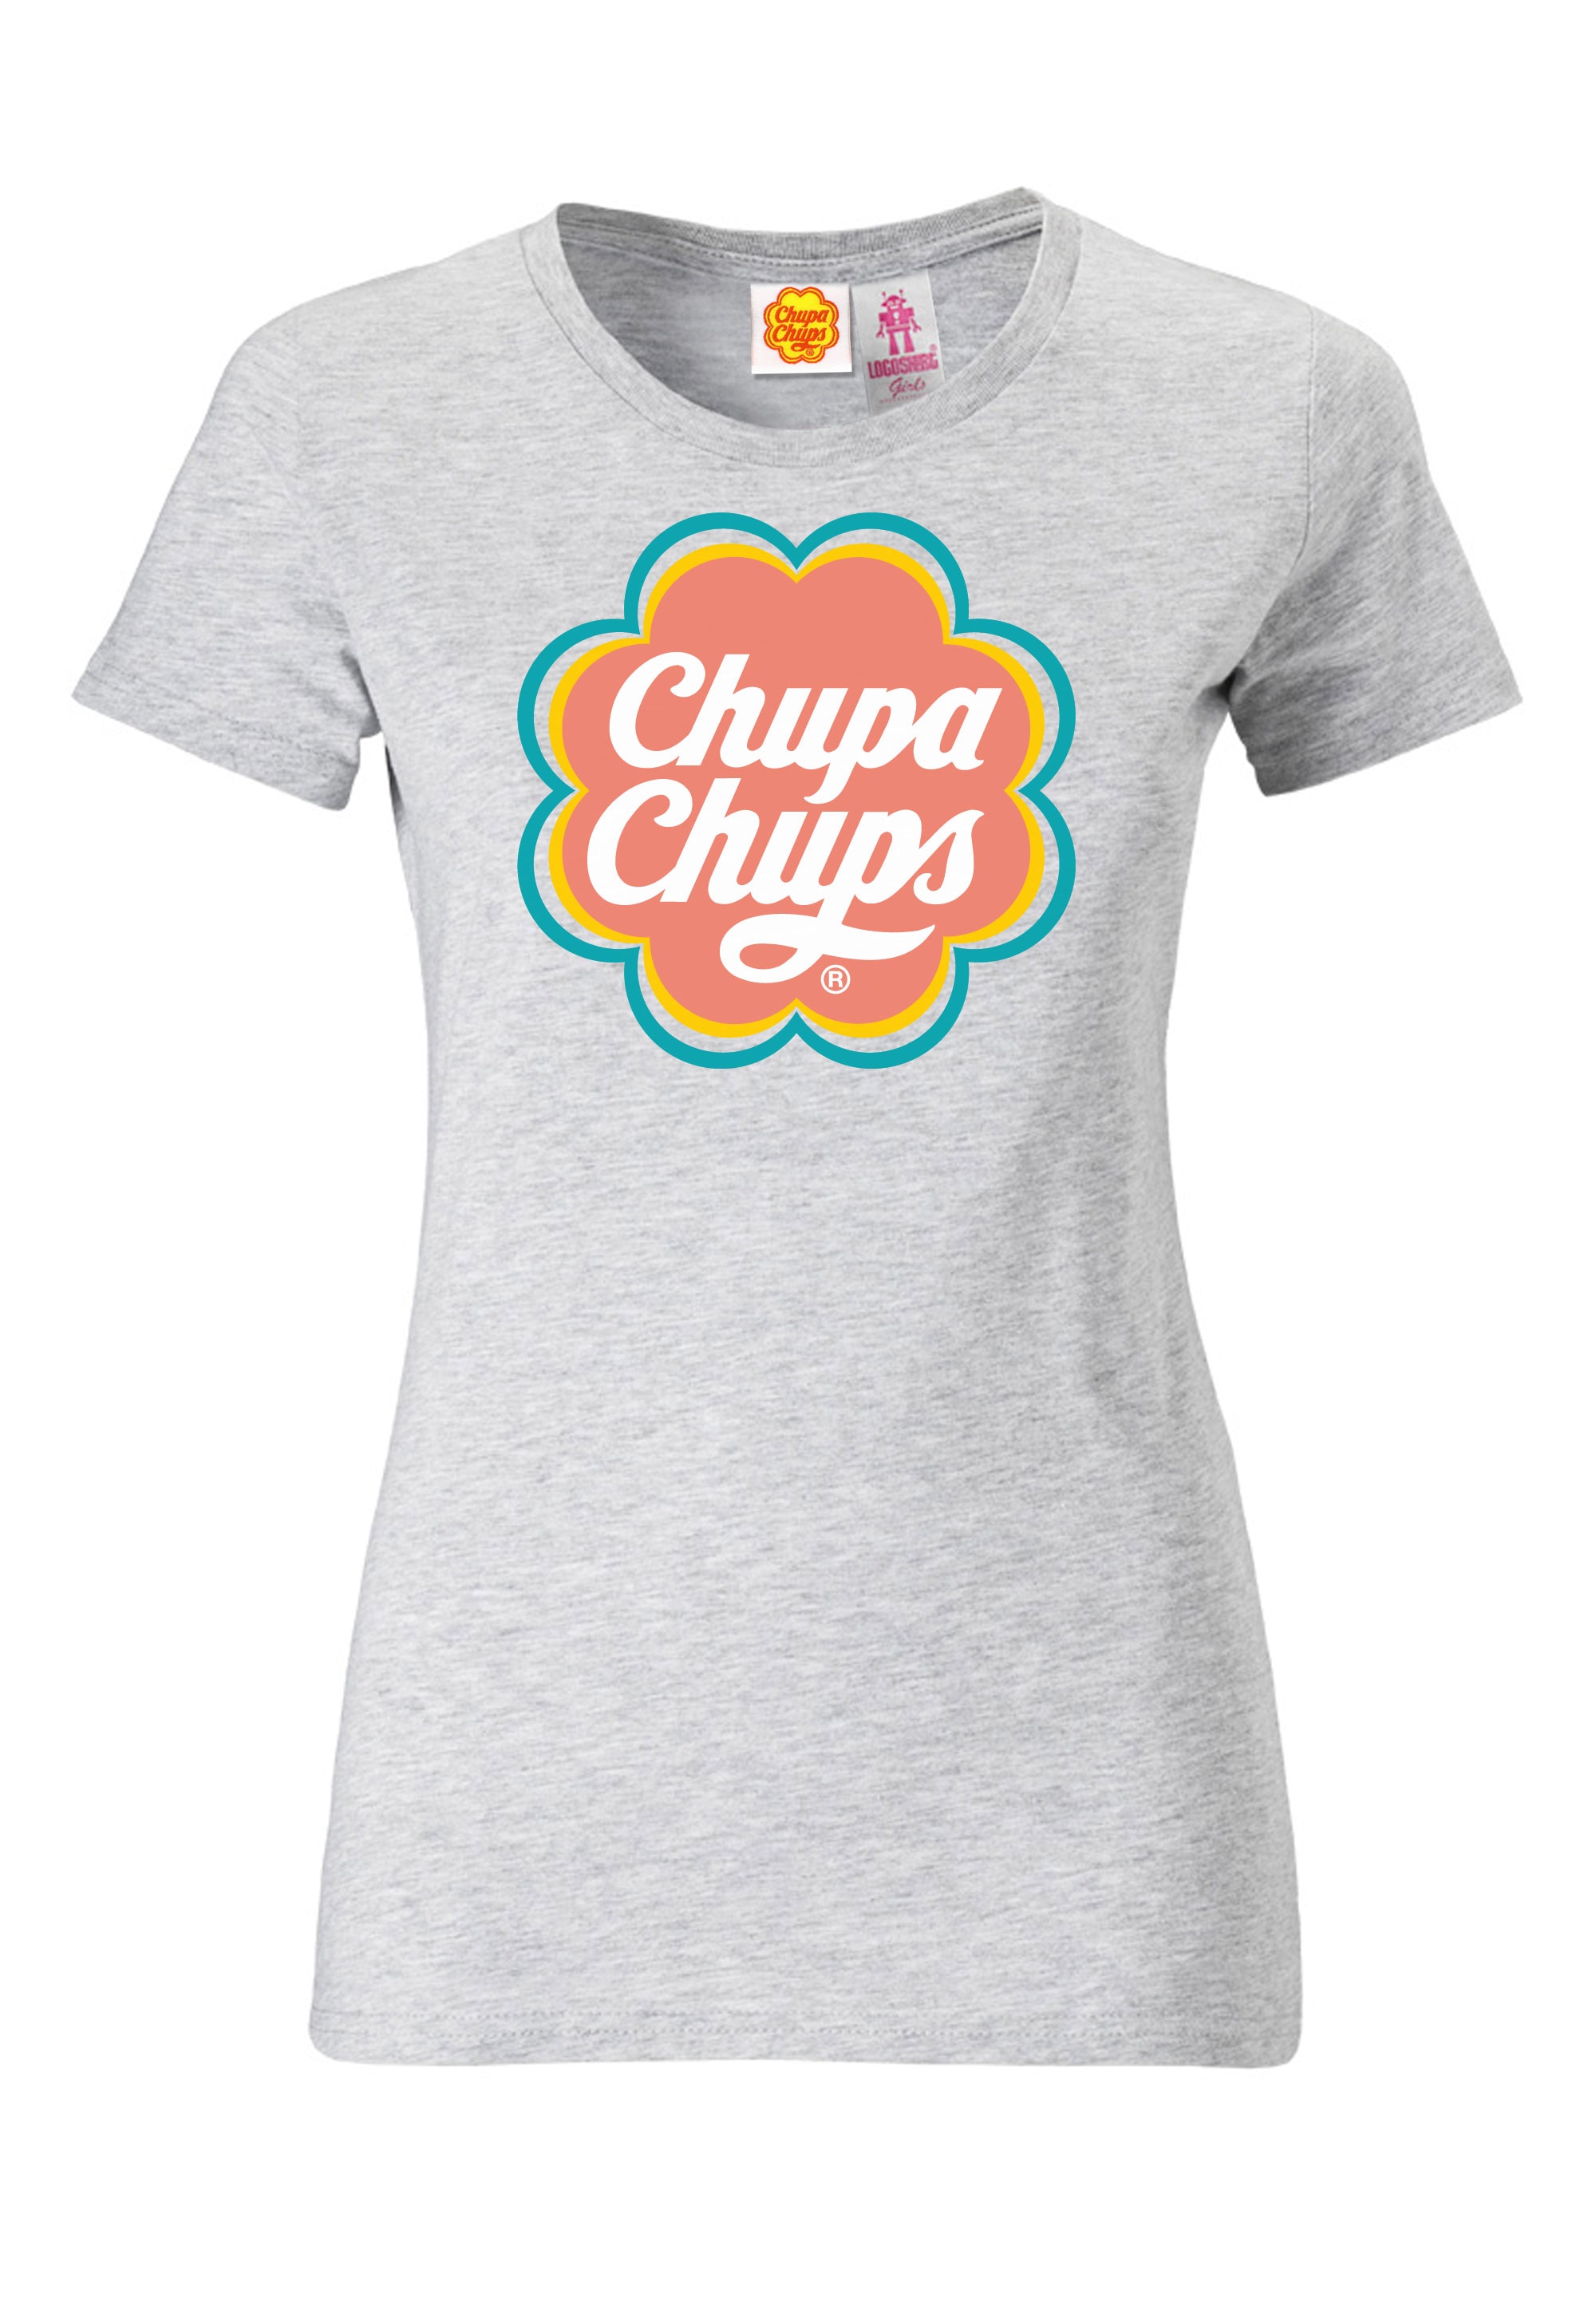 T-Shirt lizenzierten kaufen LOGOSHIRT »Chupa Chups«, Design mit